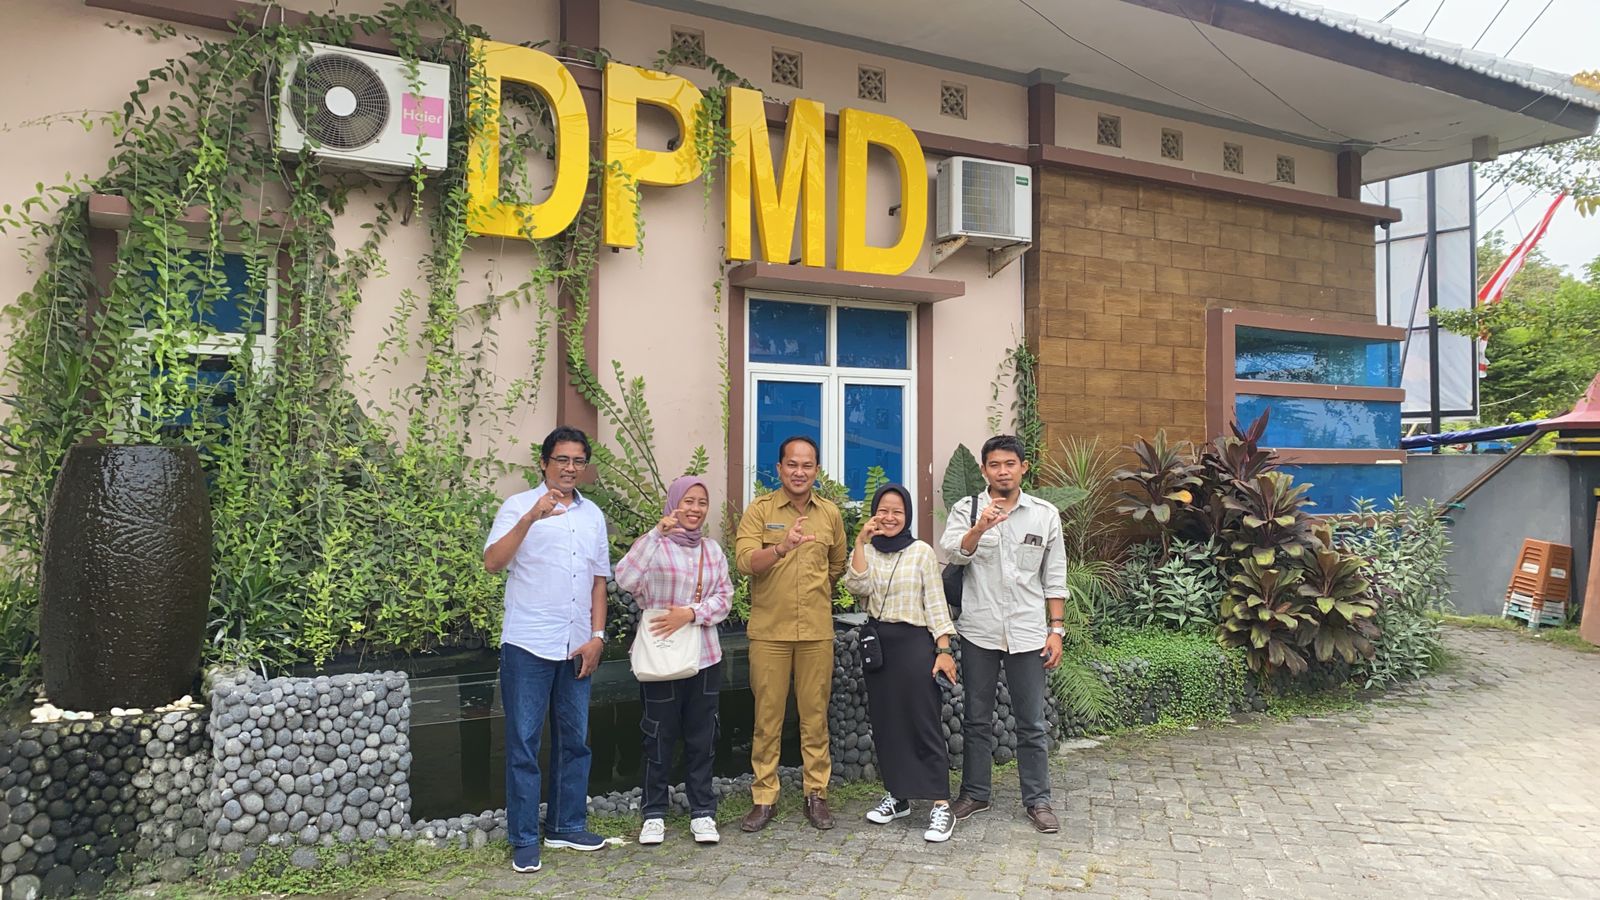 DPMD Bangkalan dan Duta Digital Siap Sukseskan 6 Pilar Desa Cerdas